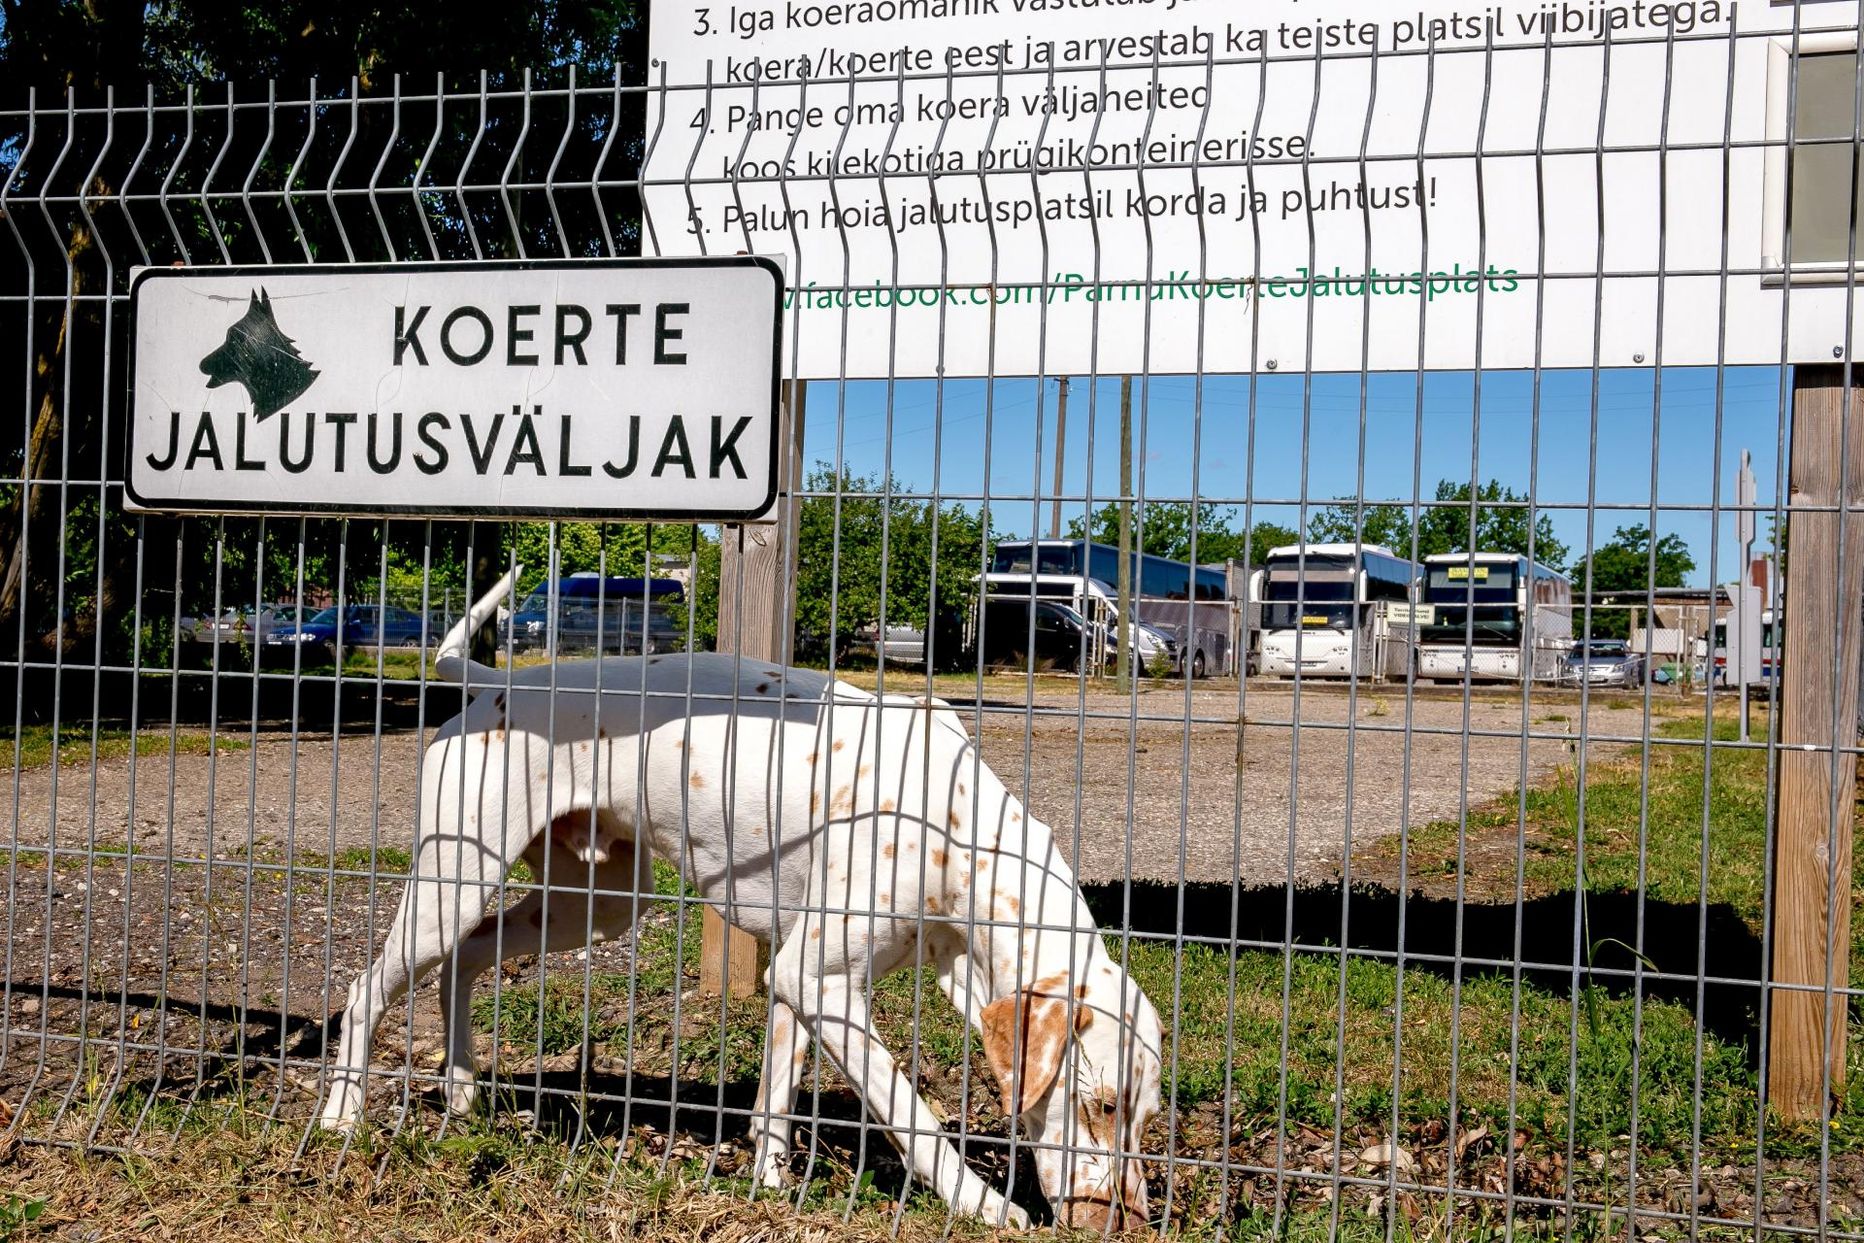 Kagumari hooldada jäävad Mai ja Reaküla piirkonna koerte jalutusväljakudki.